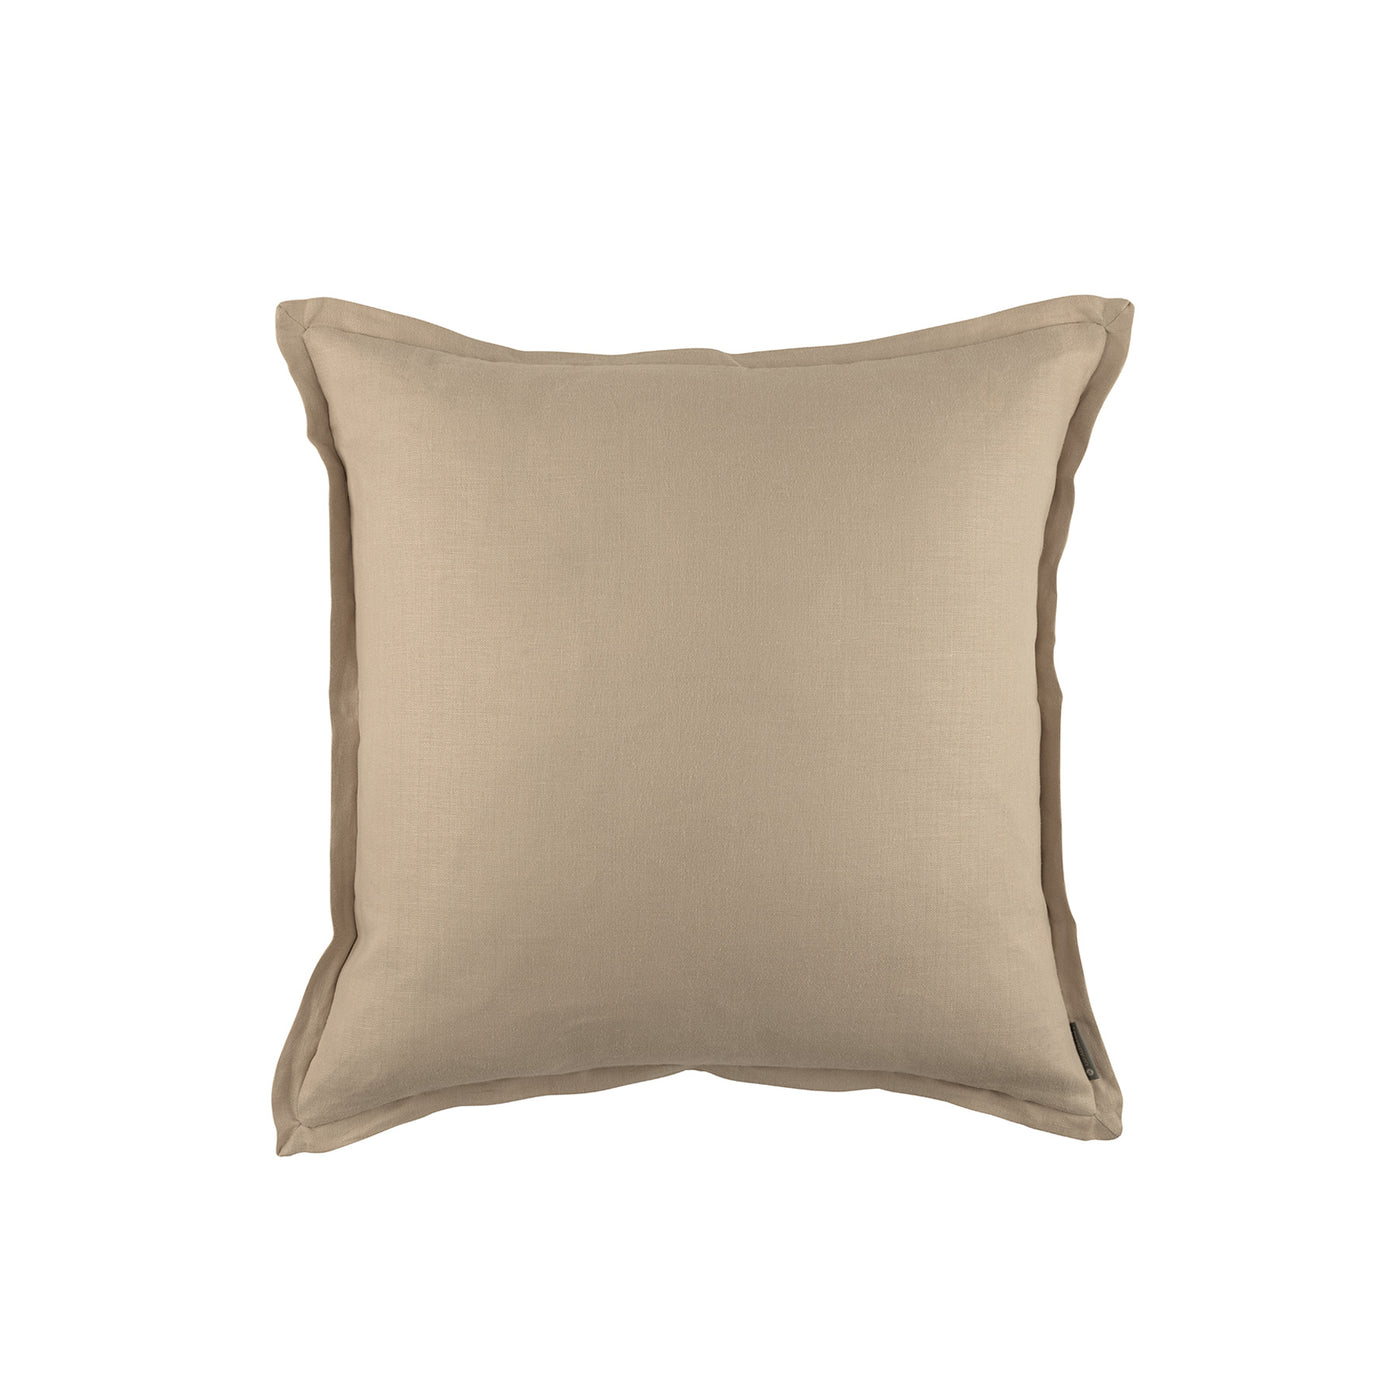 Terra Croissant European Pillow 26x26